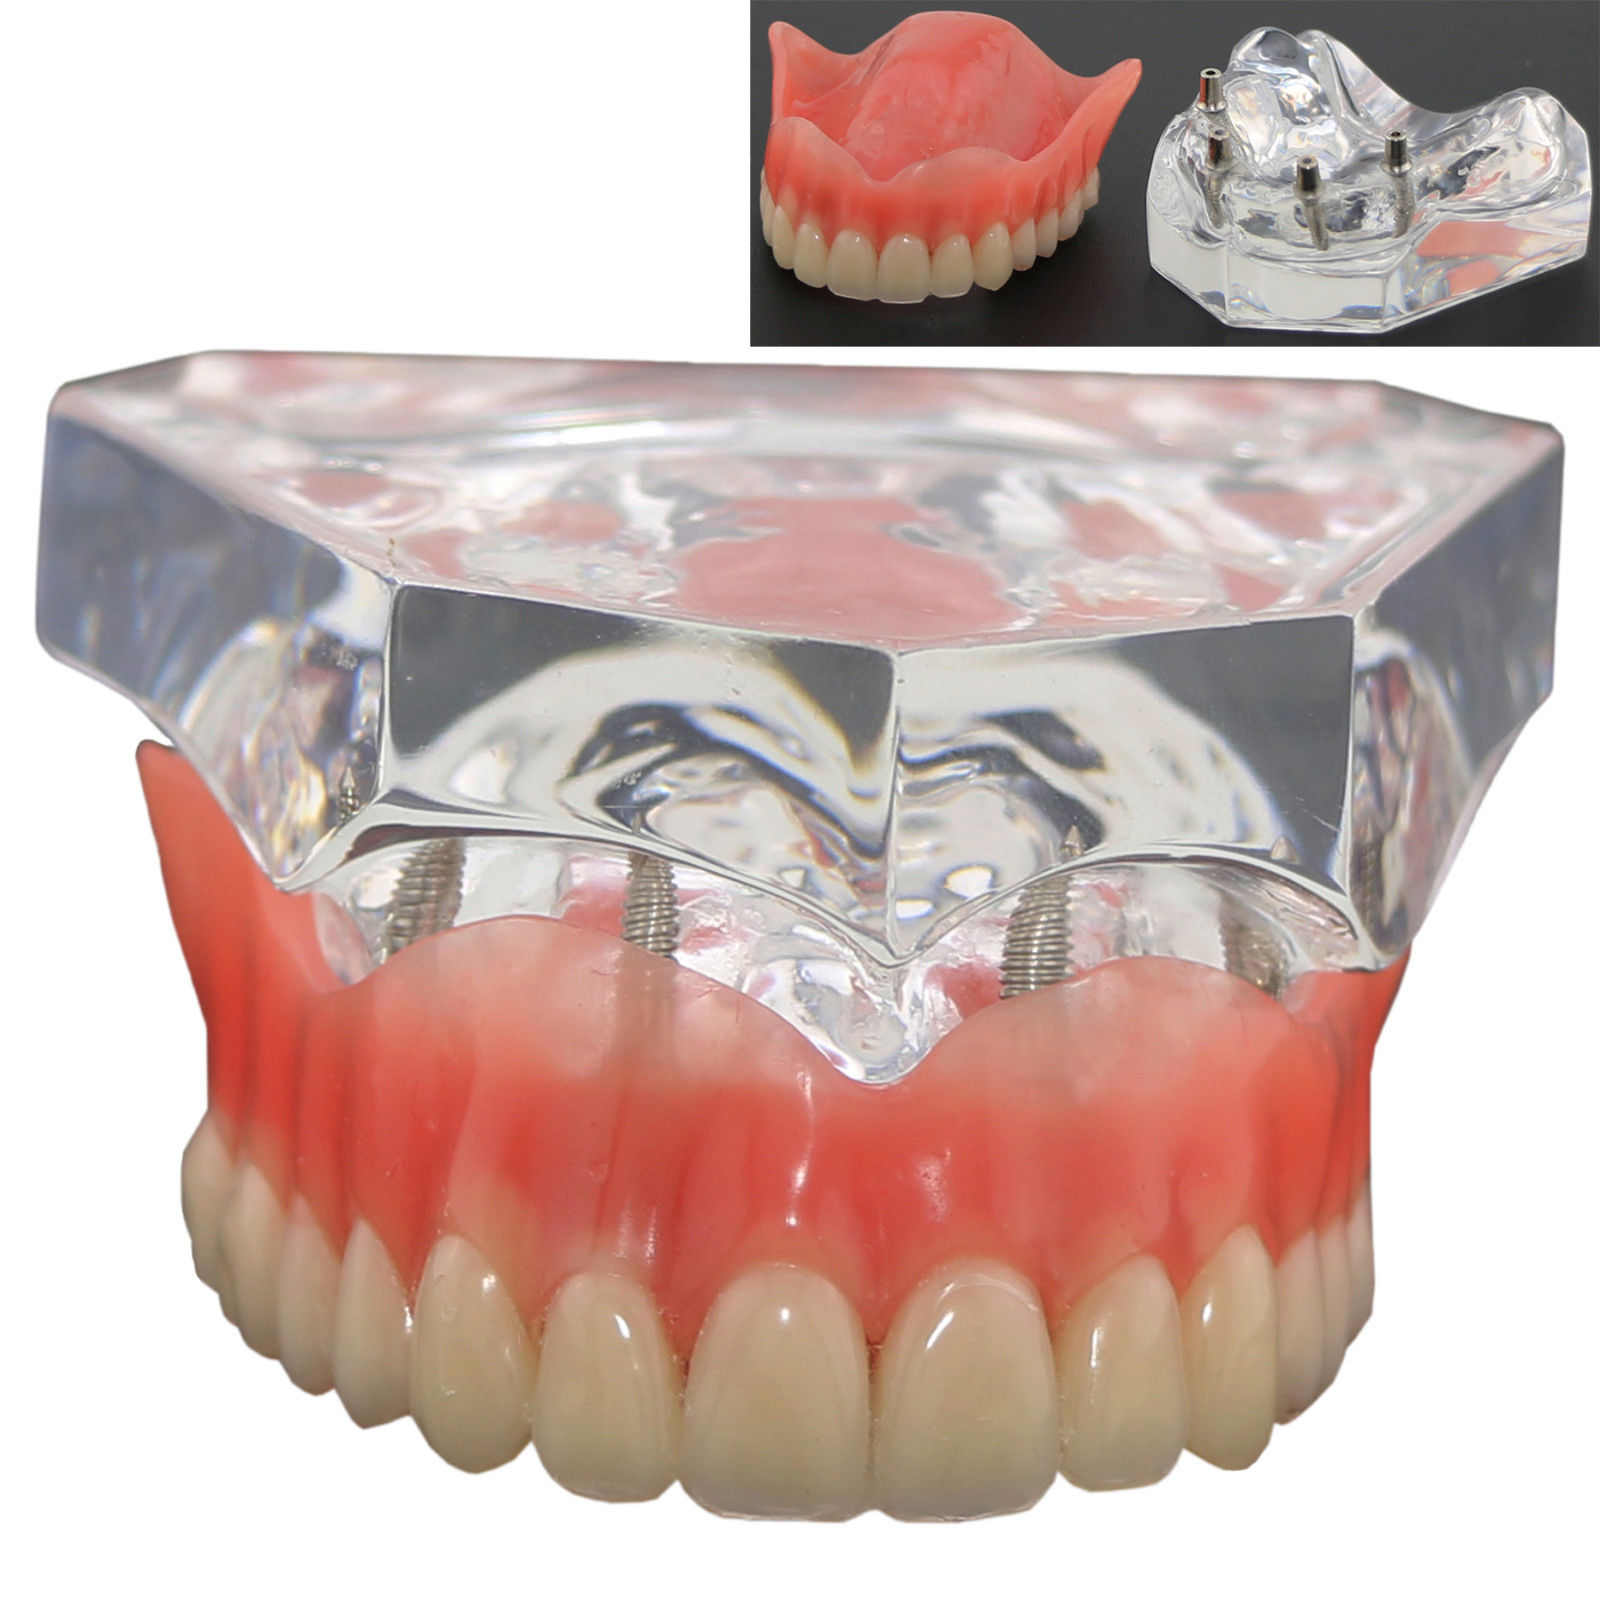 1 Stks/pak Dental Bovenste Overkappingsprothese Superieure 4 Implantaten Demo Model 6001 02 Tanden Model